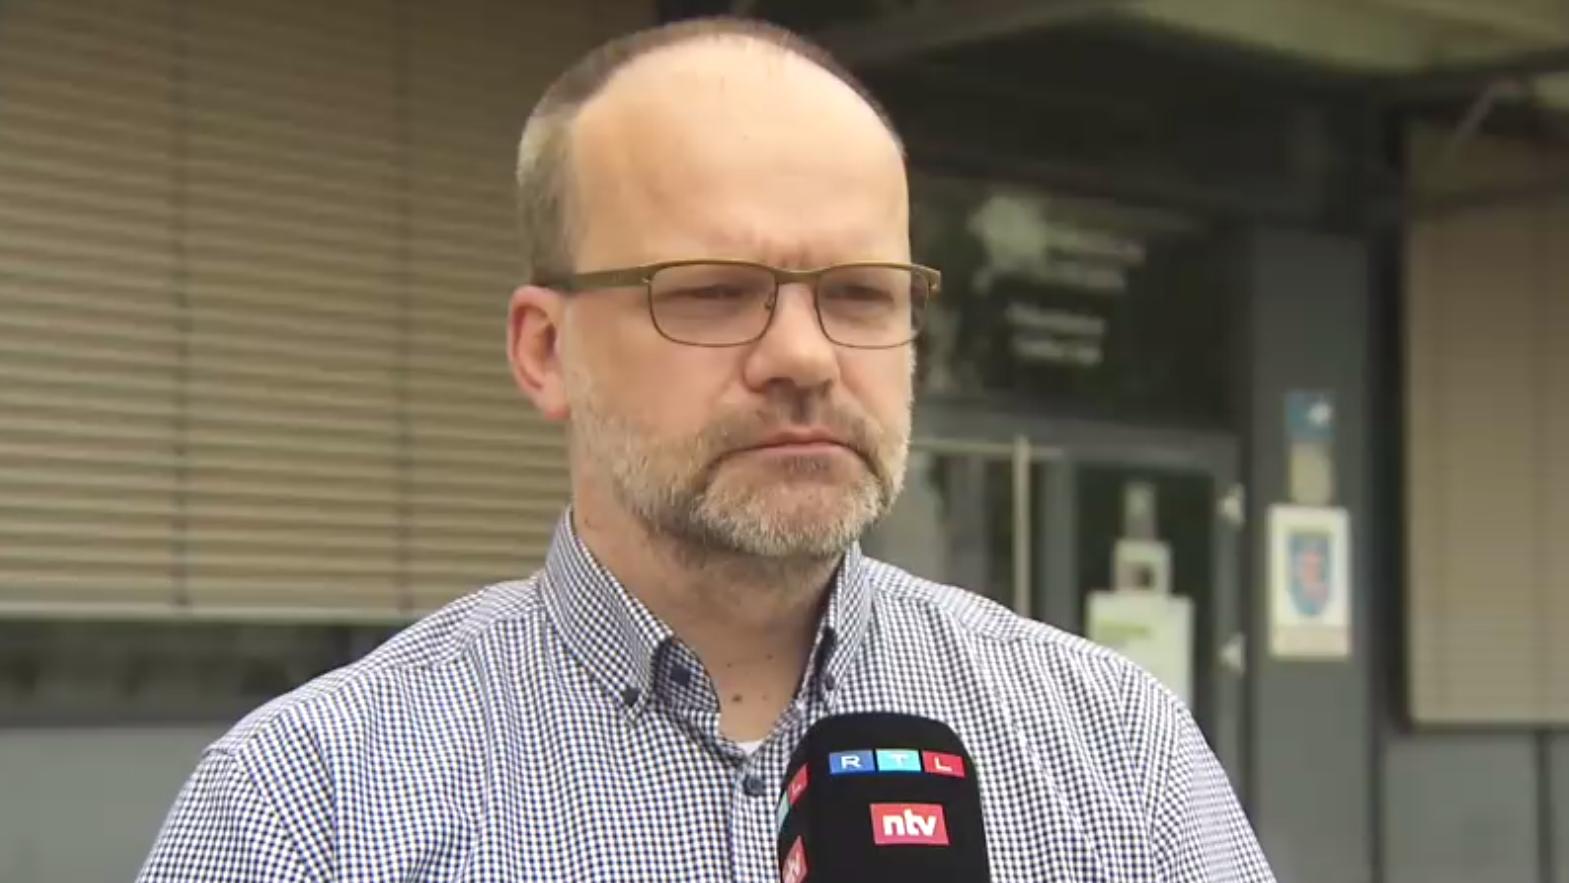 Polizeisprecher Guido Rehr ist optimistisch, dass über die sozialen Netzwerke noch mehr Hinweise zu Lukes Verbleib eingehen. "Gerade was Tiergeschichten angeht, ist man da sehr sensibel", sagt er im RTL-Interview.